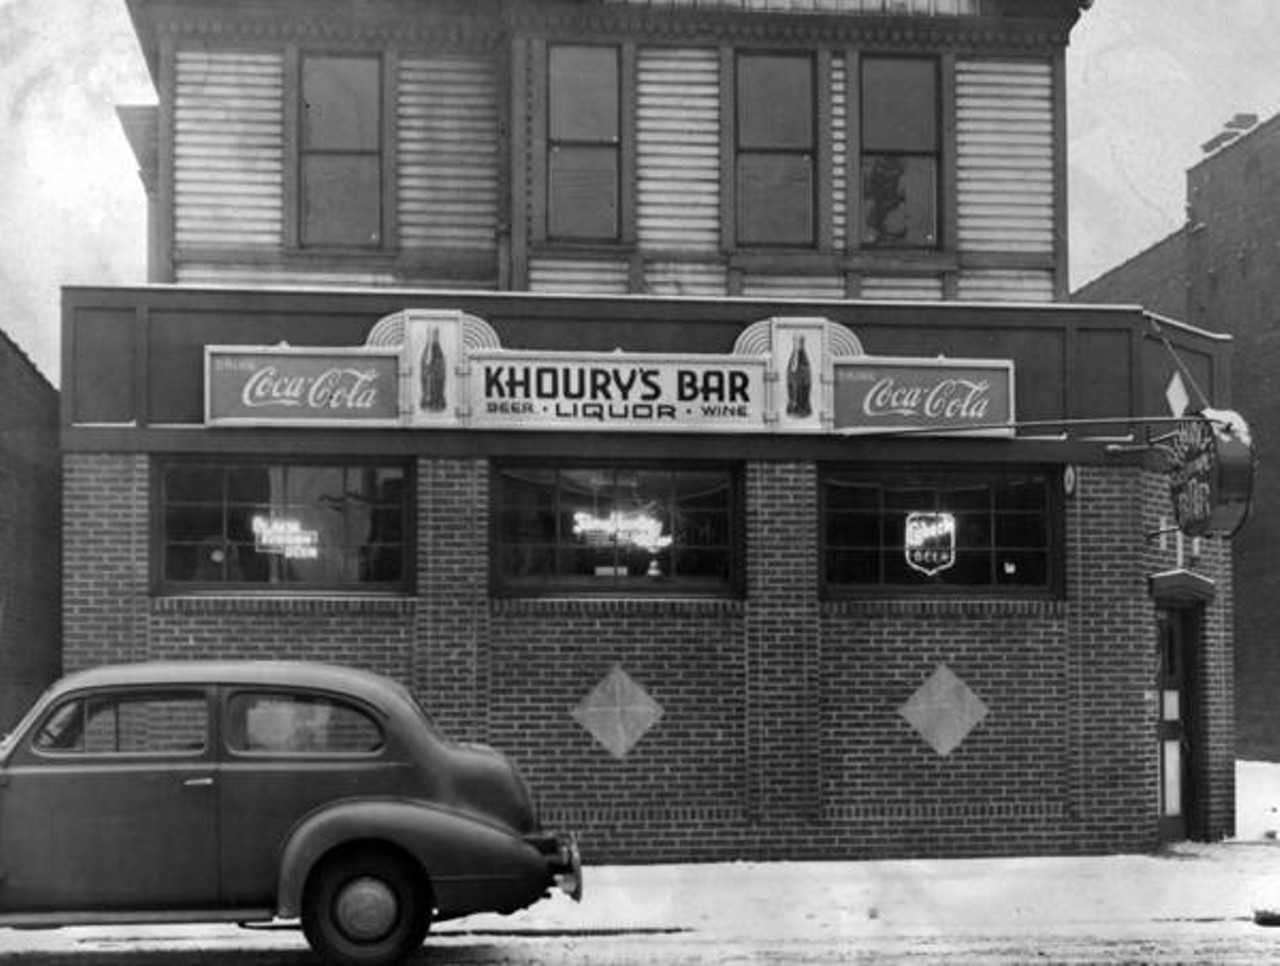  Khoury's Bar, 1939